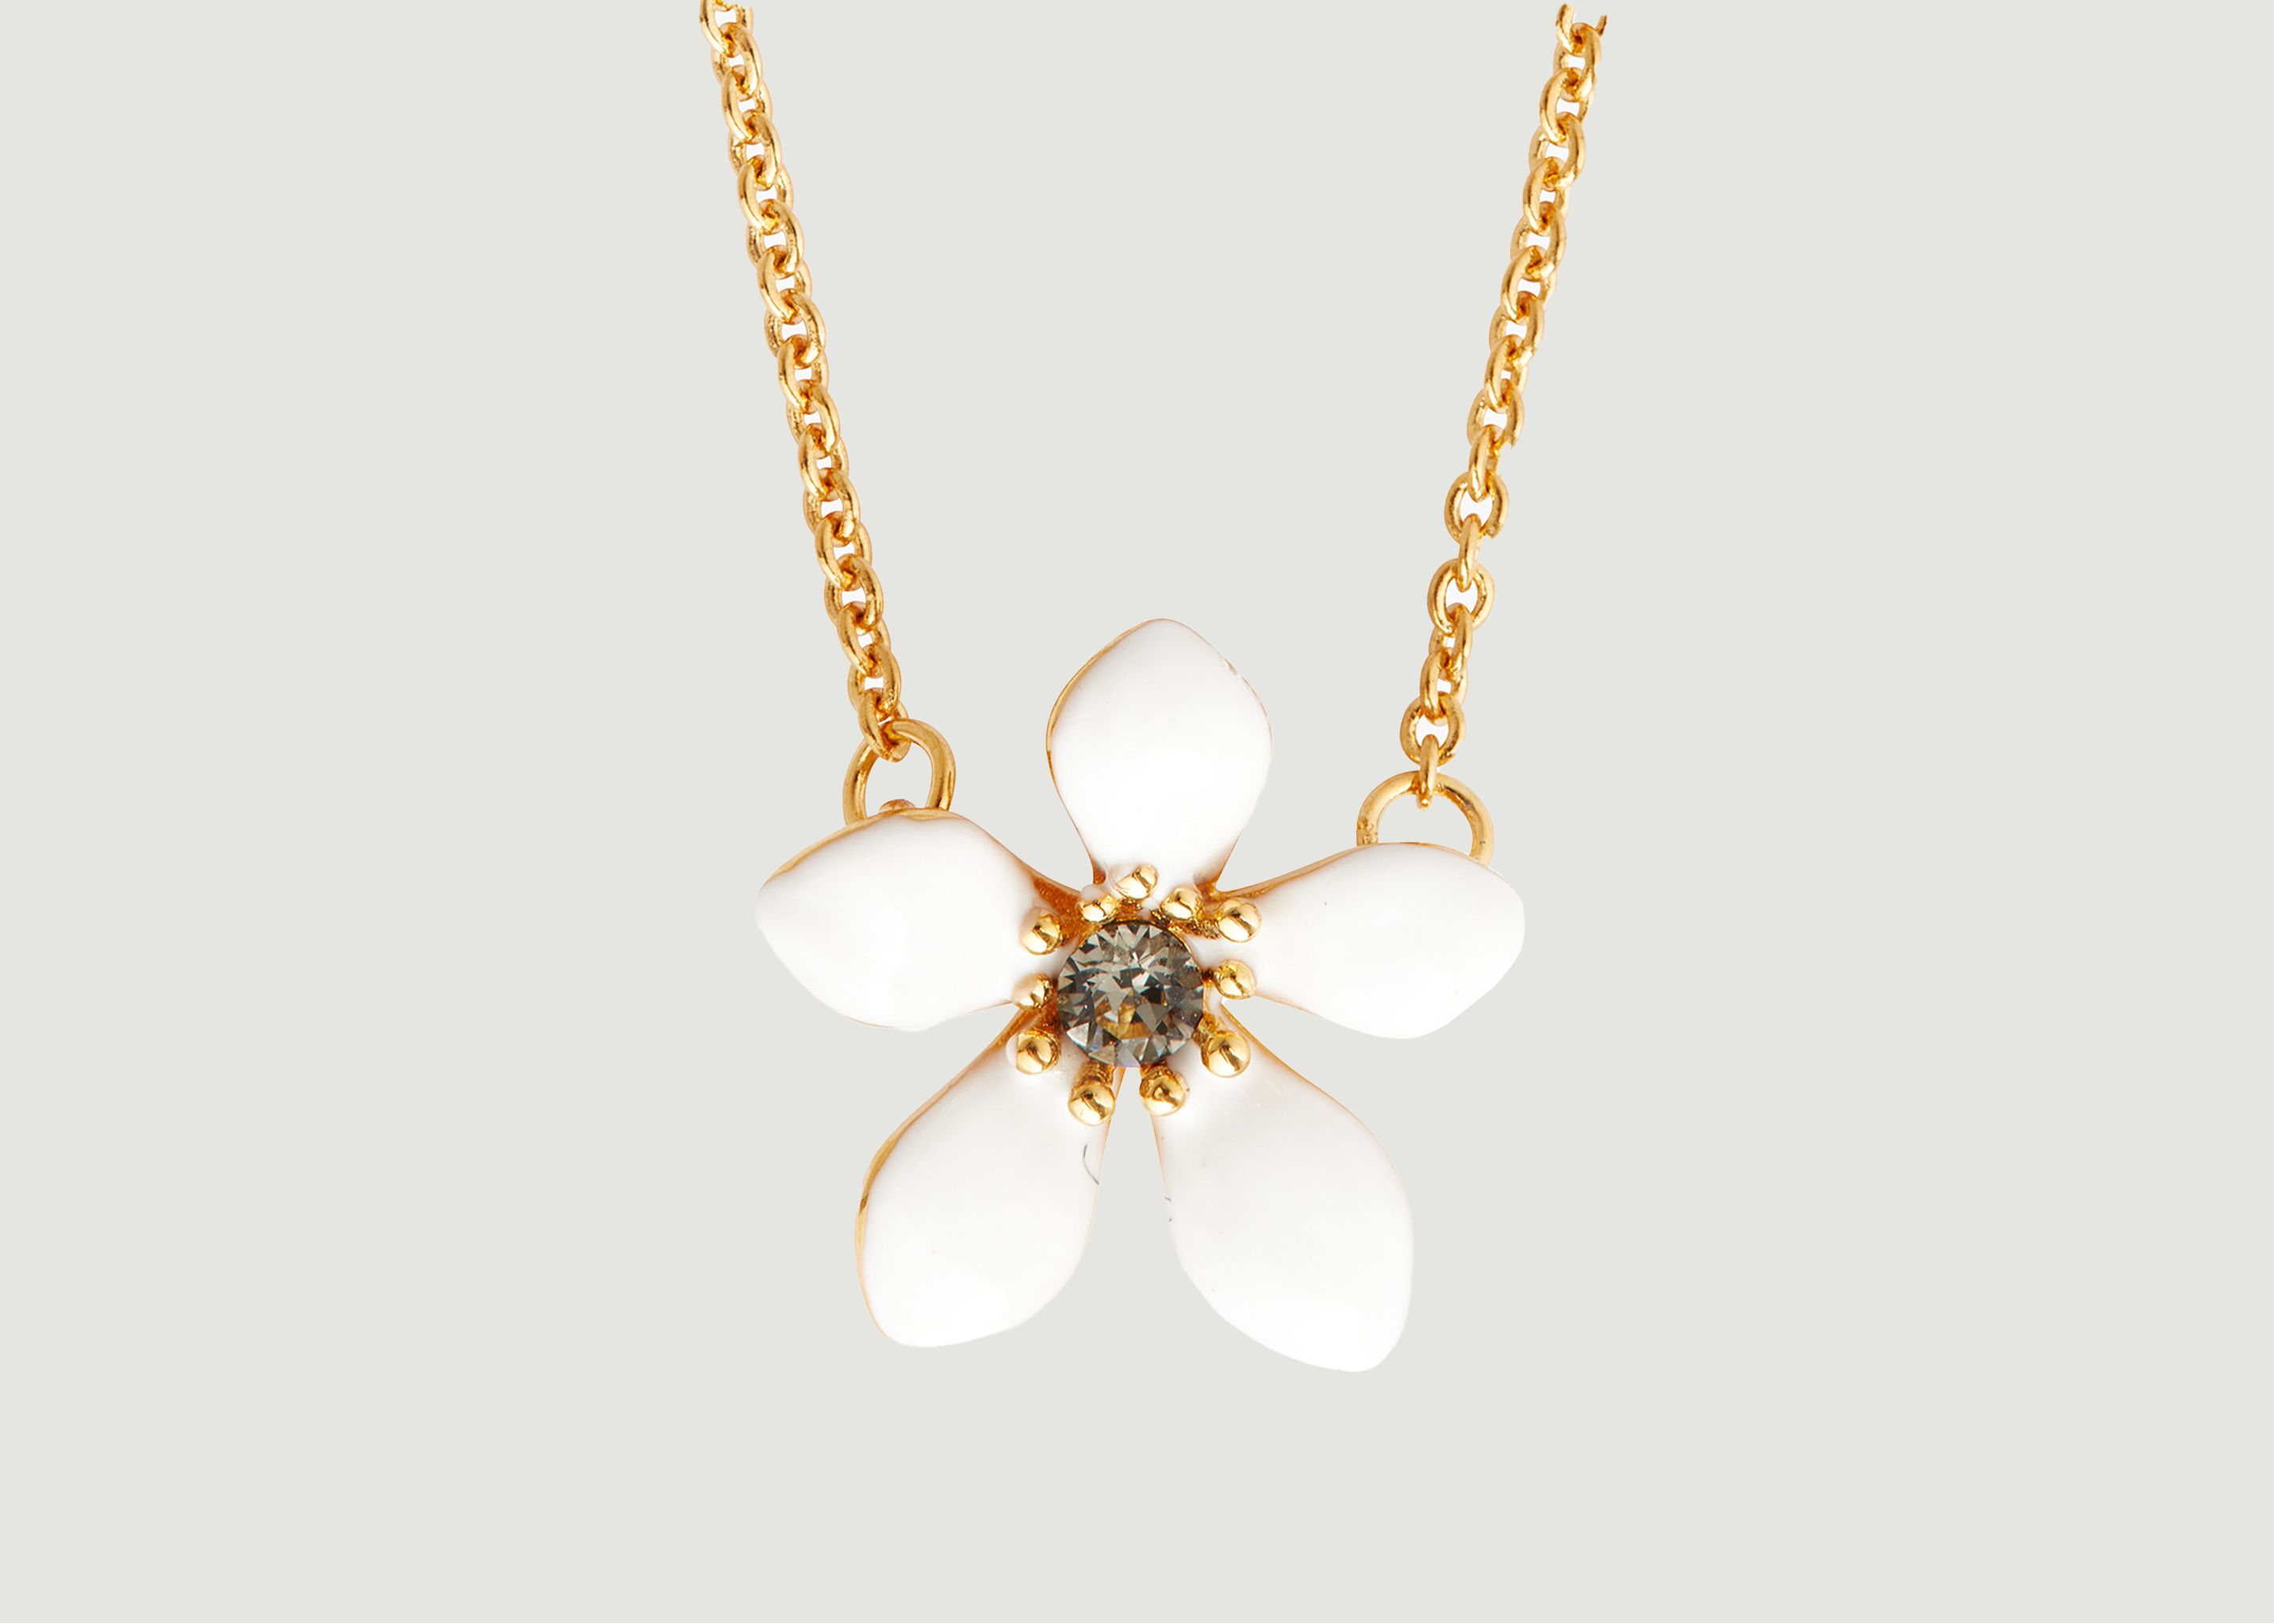 Fine necklace with buttercup pendant - Les Néréides